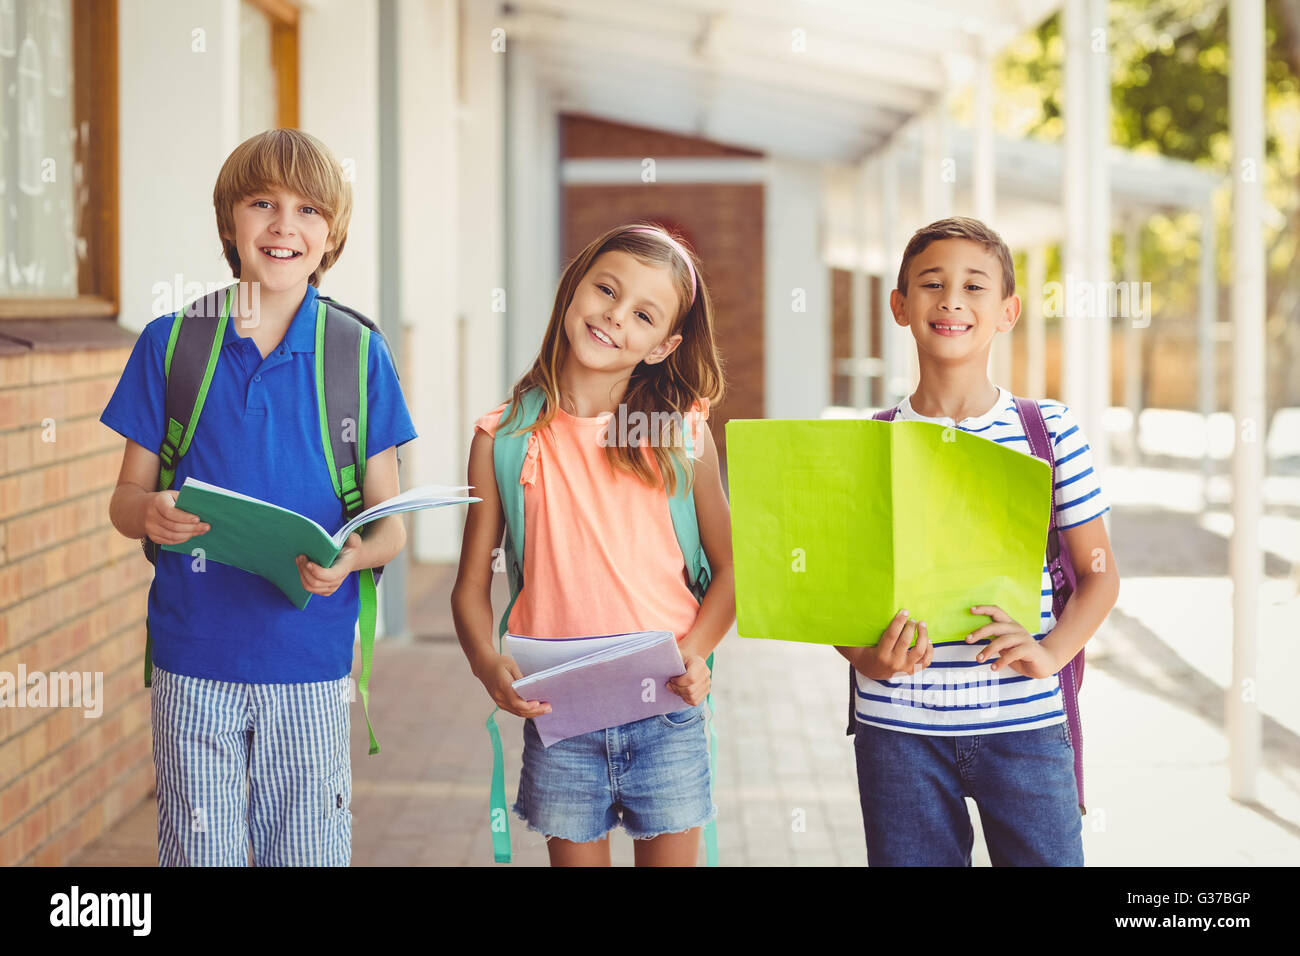 Porträt des Lächelns Schulkinder stehend im Flur der Schule Stockfoto